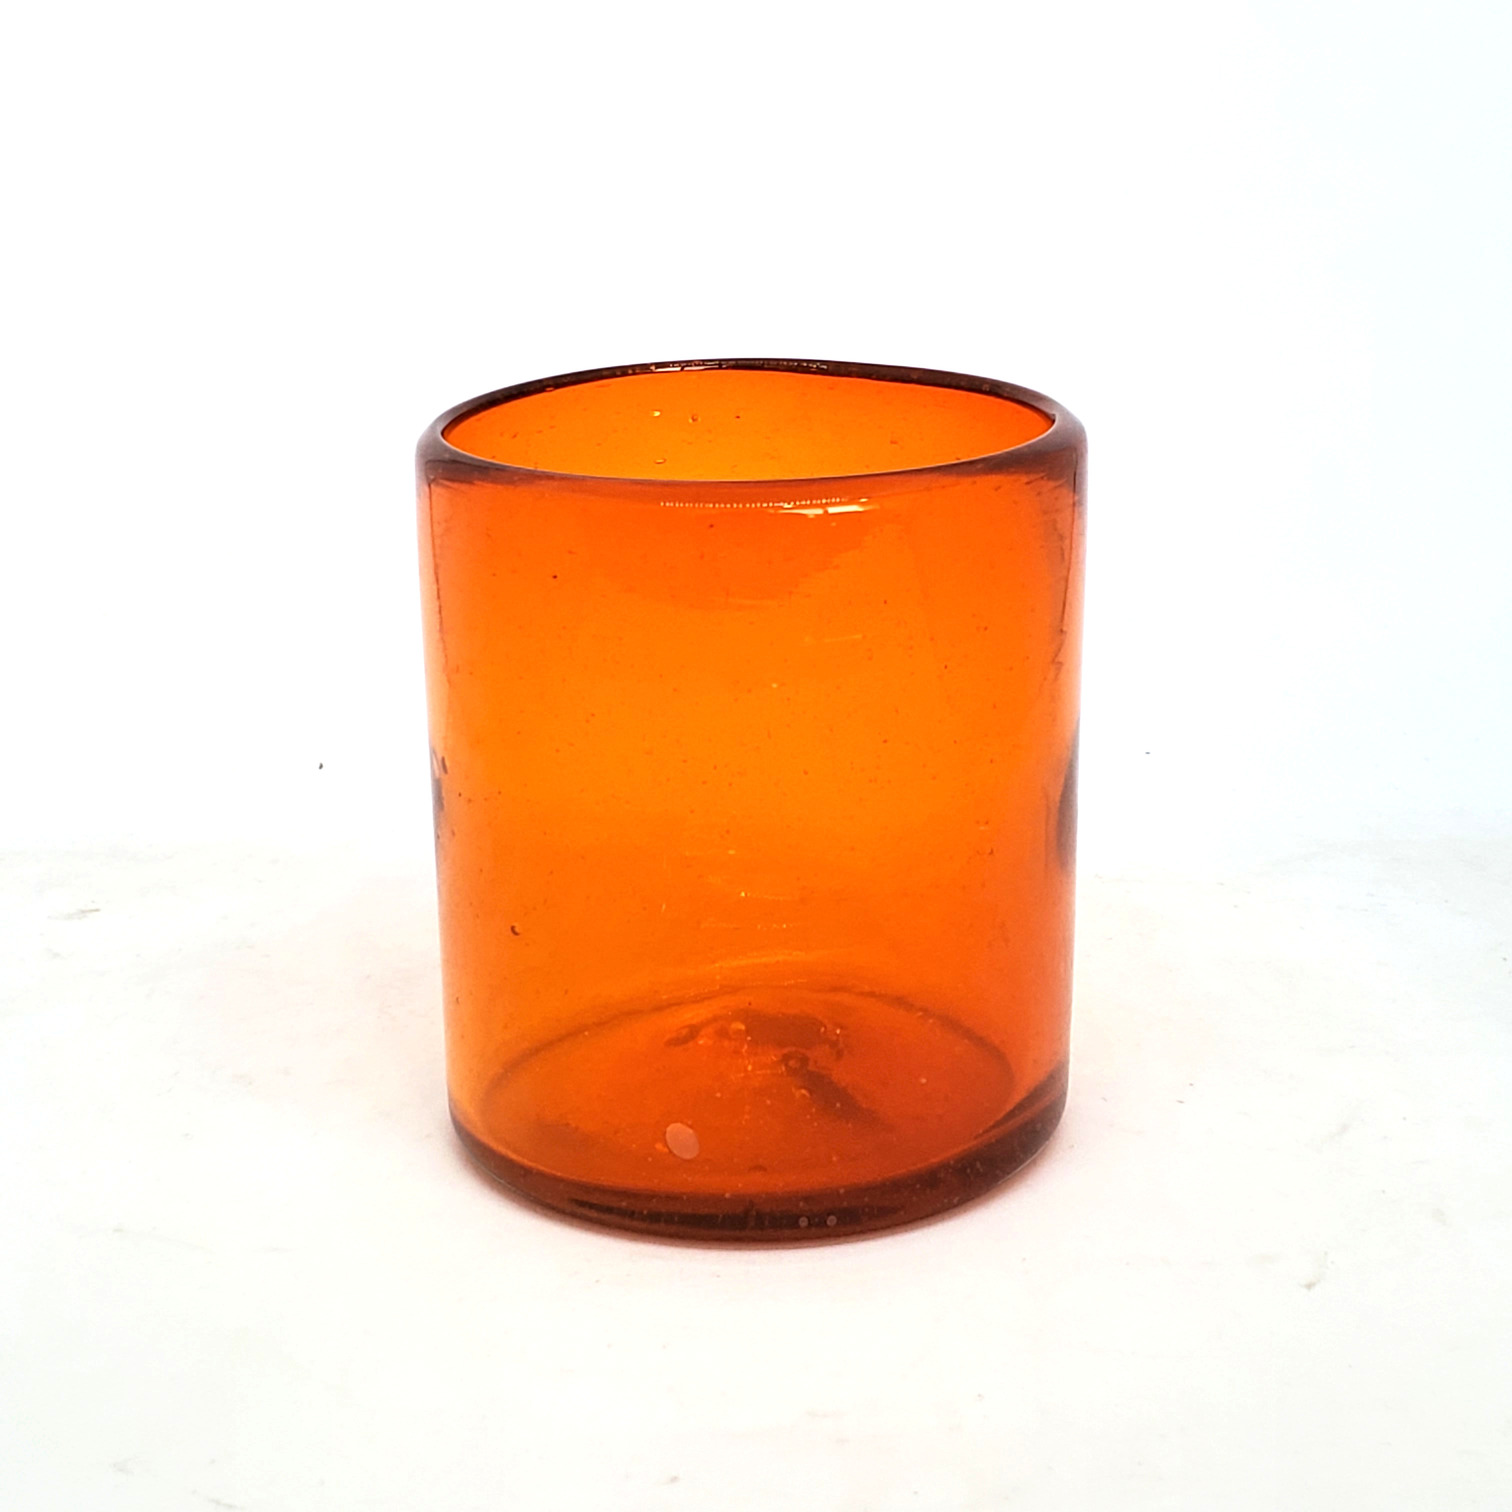 Vasos de Vidrio Soplado / Vasos chicos 9 oz color Naranja Sólido (set de 6) / Éstos artesanales vasos le darán un toque colorido a su bebida favorita.